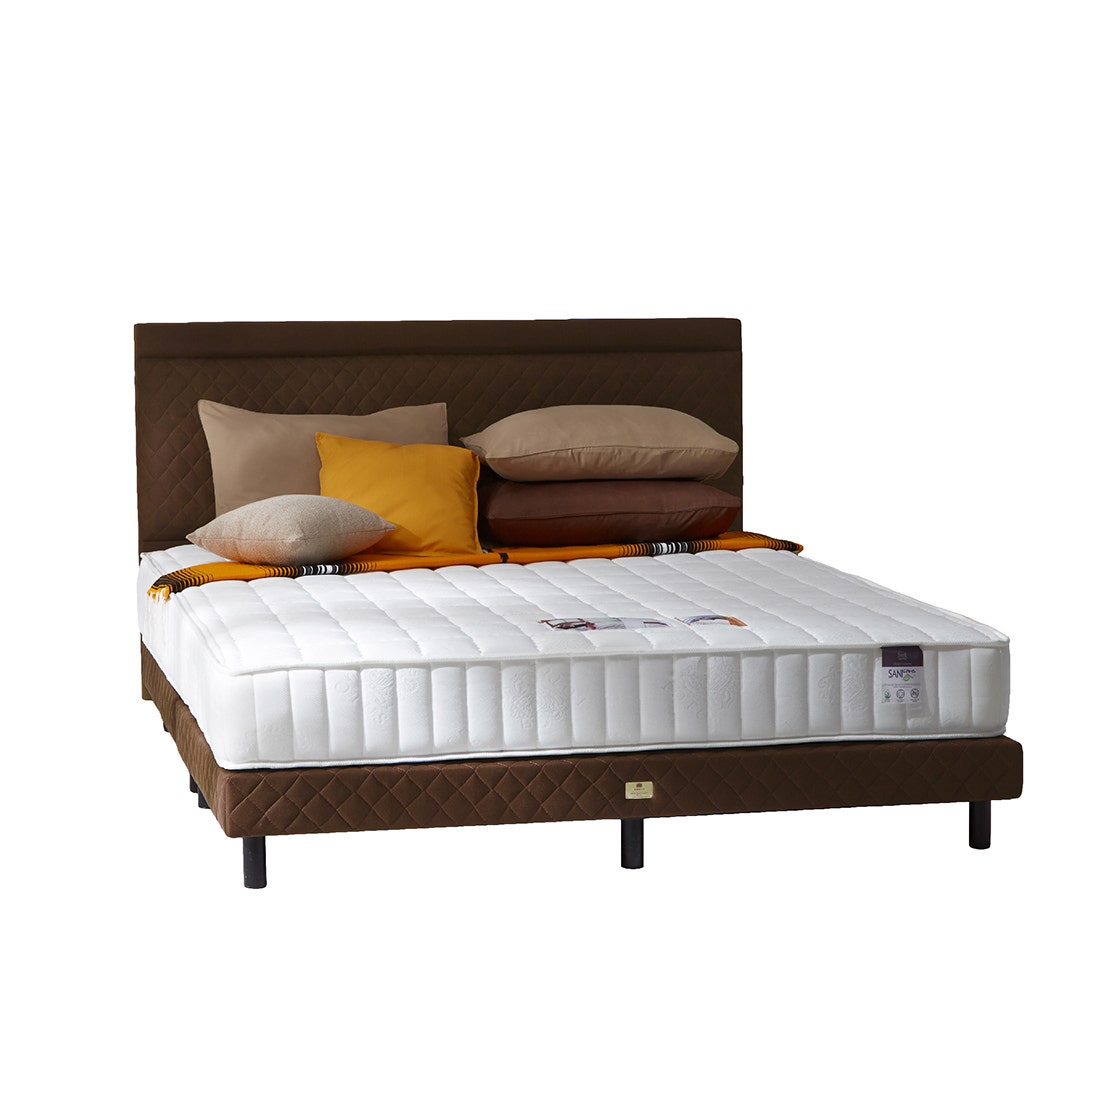 39005129-mattress-bedding-mattresses-spring-mattresses-06